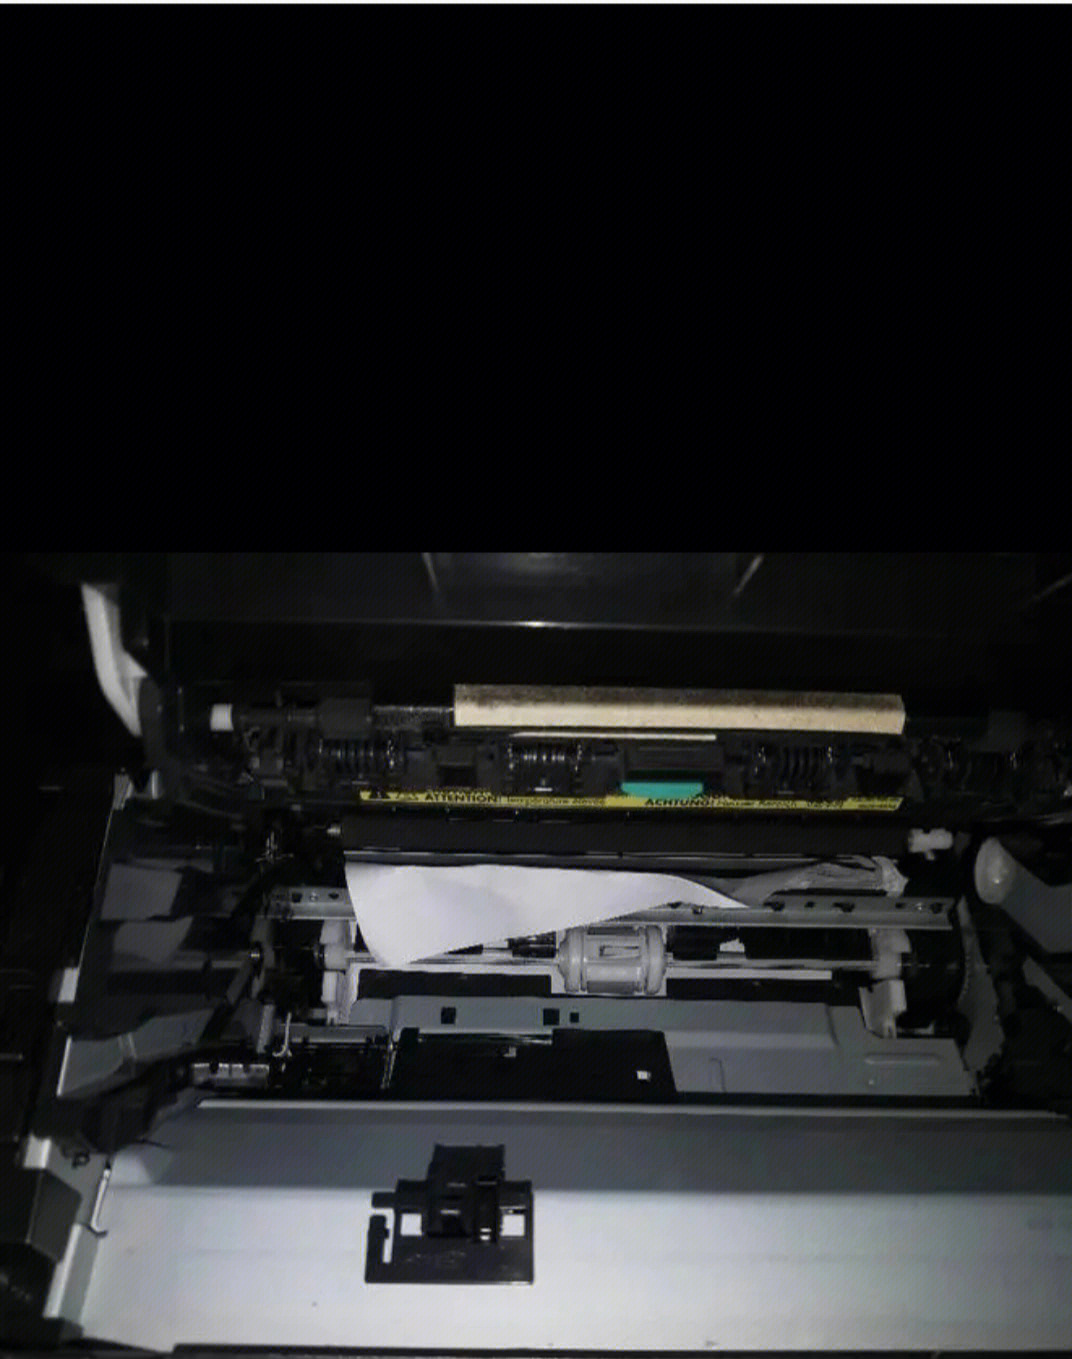 惠普m177fw打印机卡纸图片